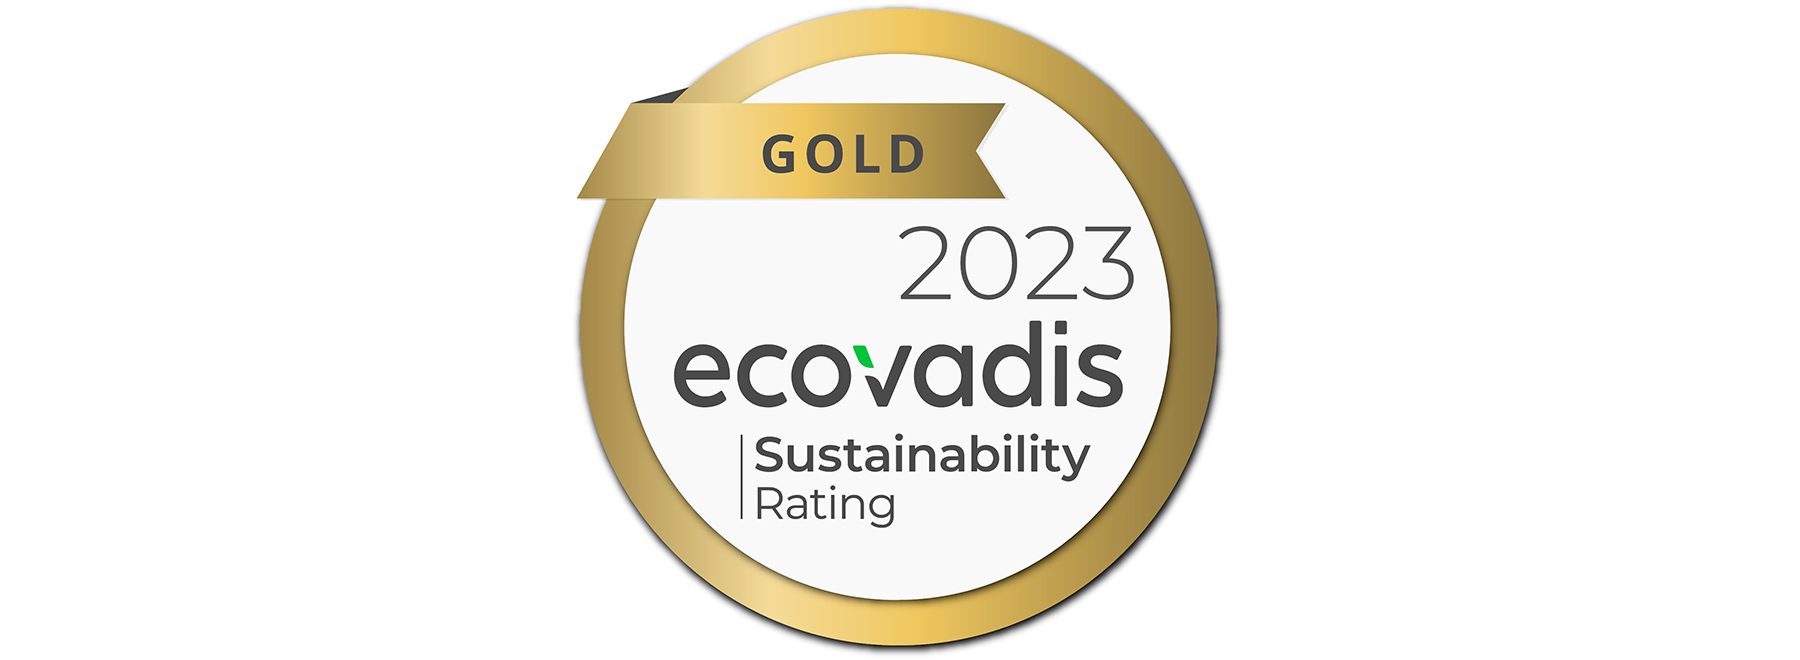 EcoVadis（エコバディス）「ゴールド」評価